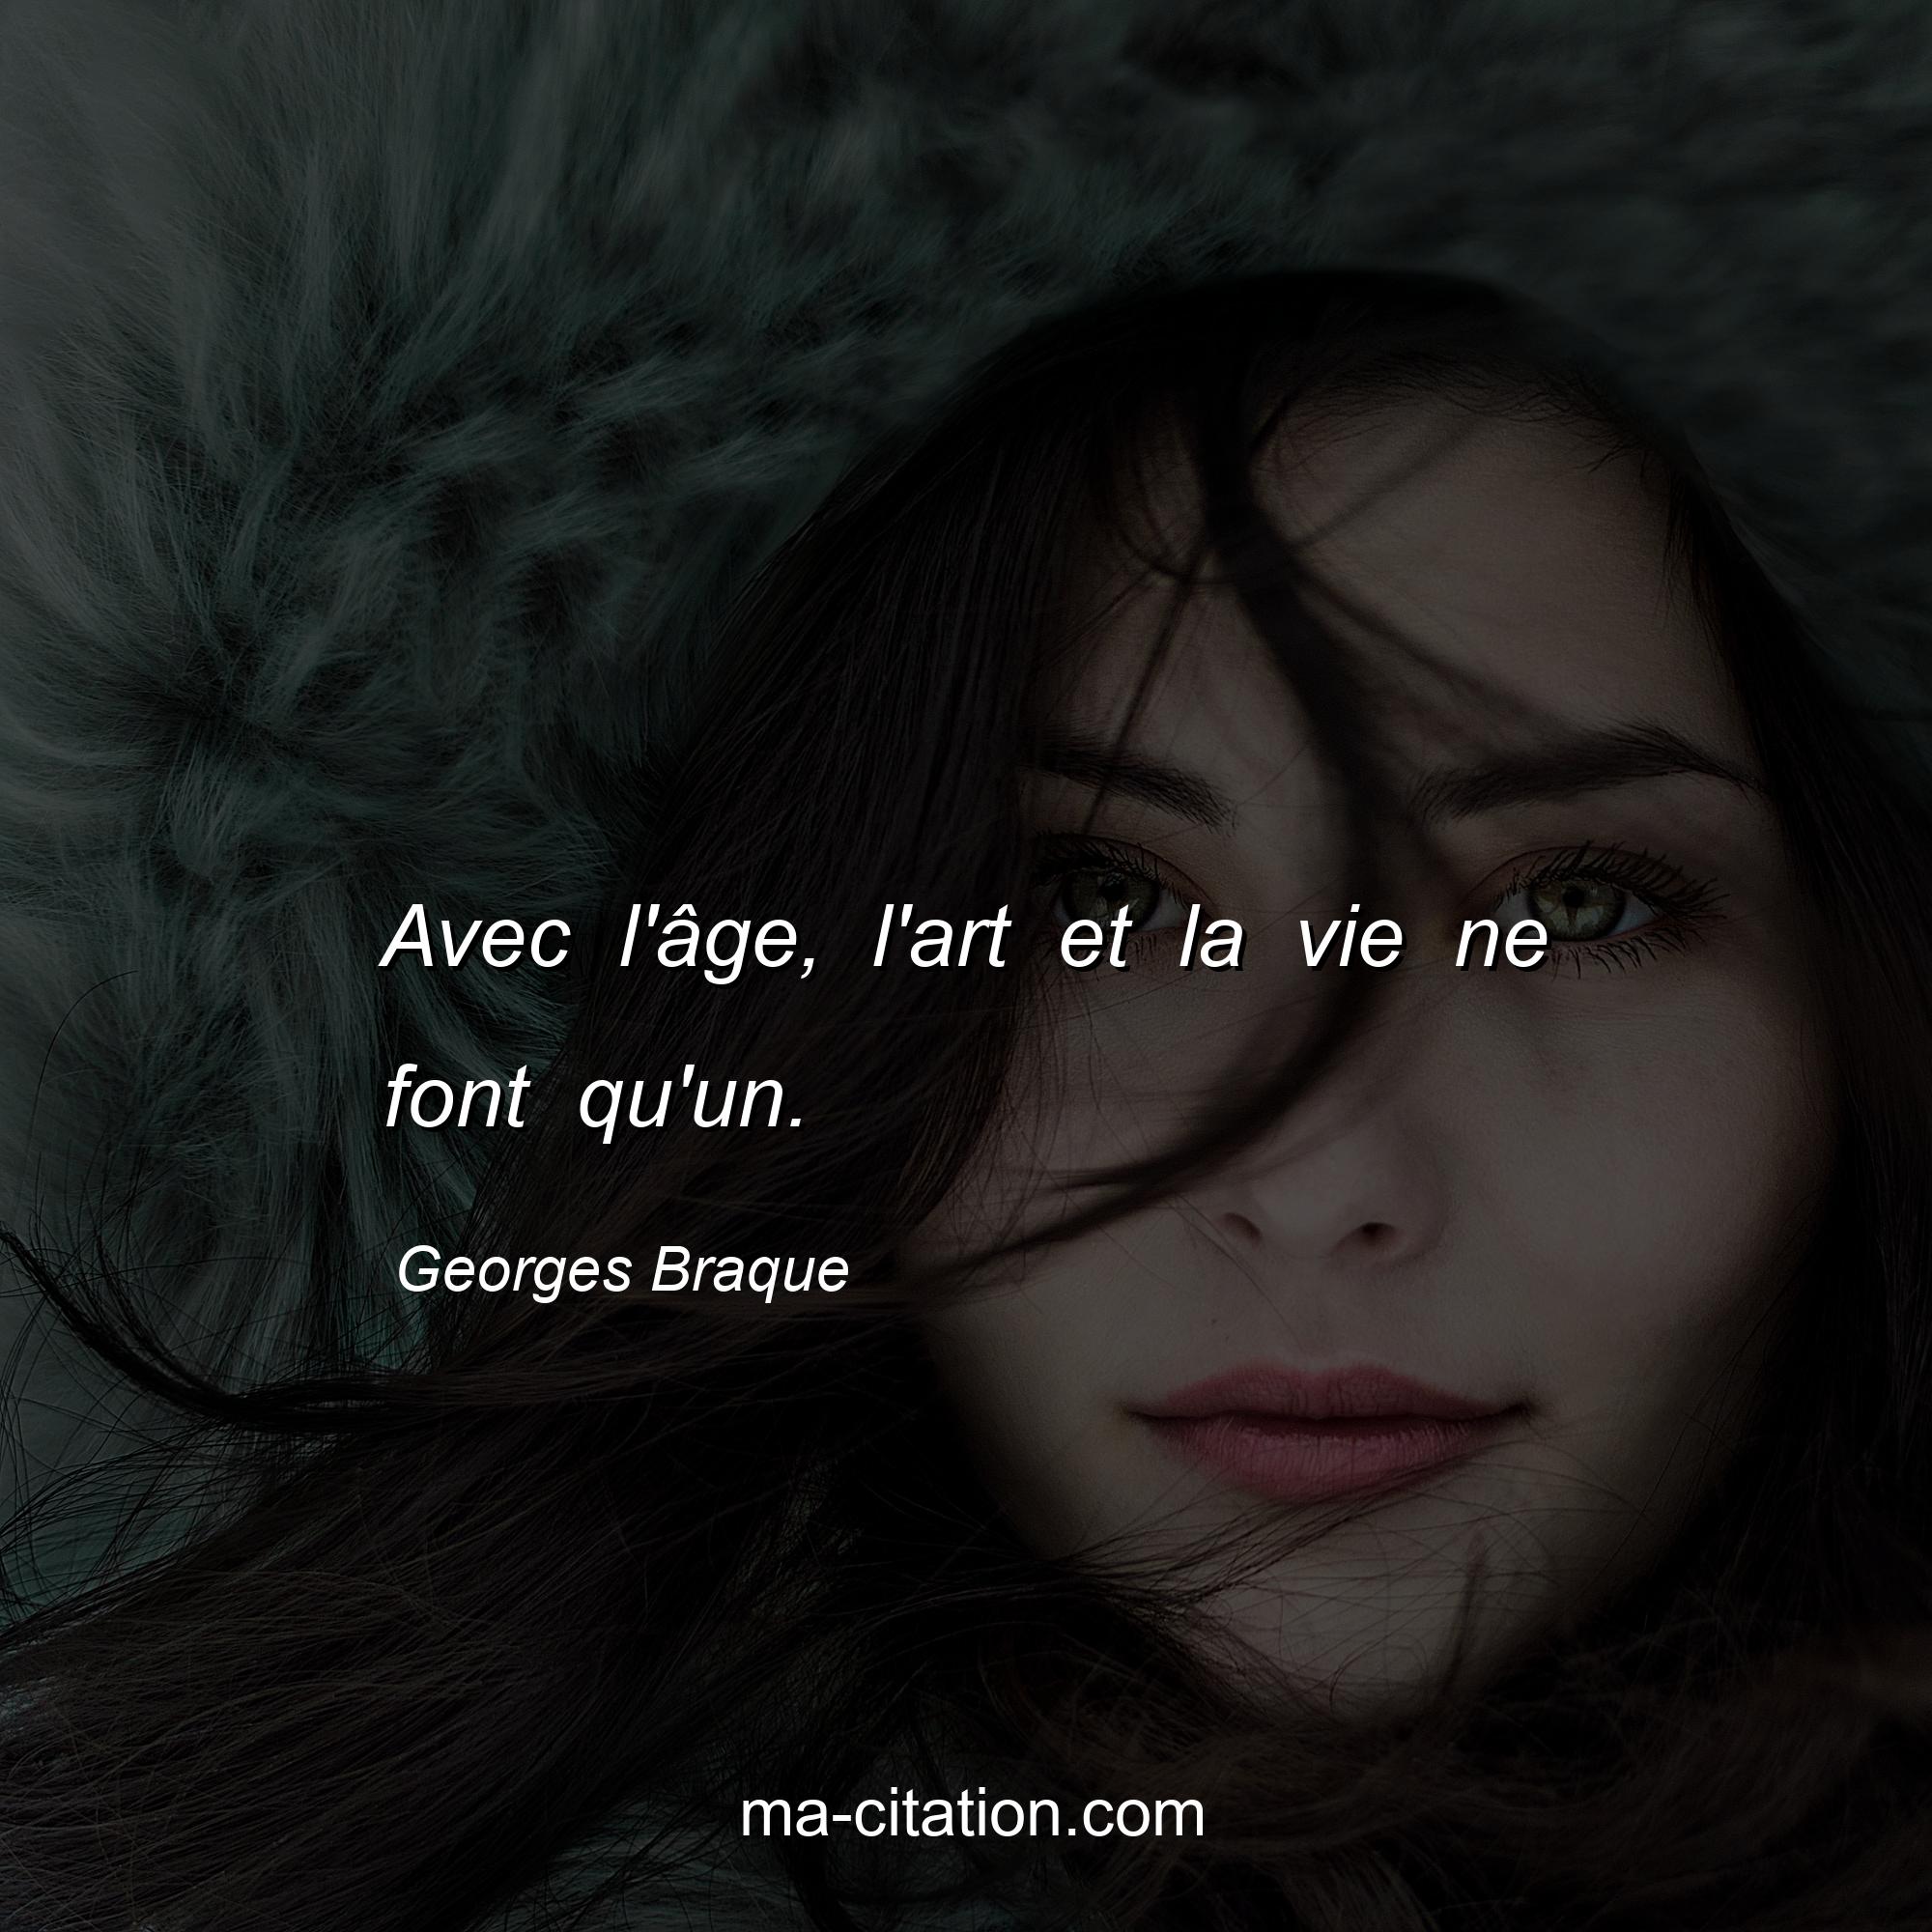 Georges Braque : Avec l'âge, l'art et la vie ne font qu'un.